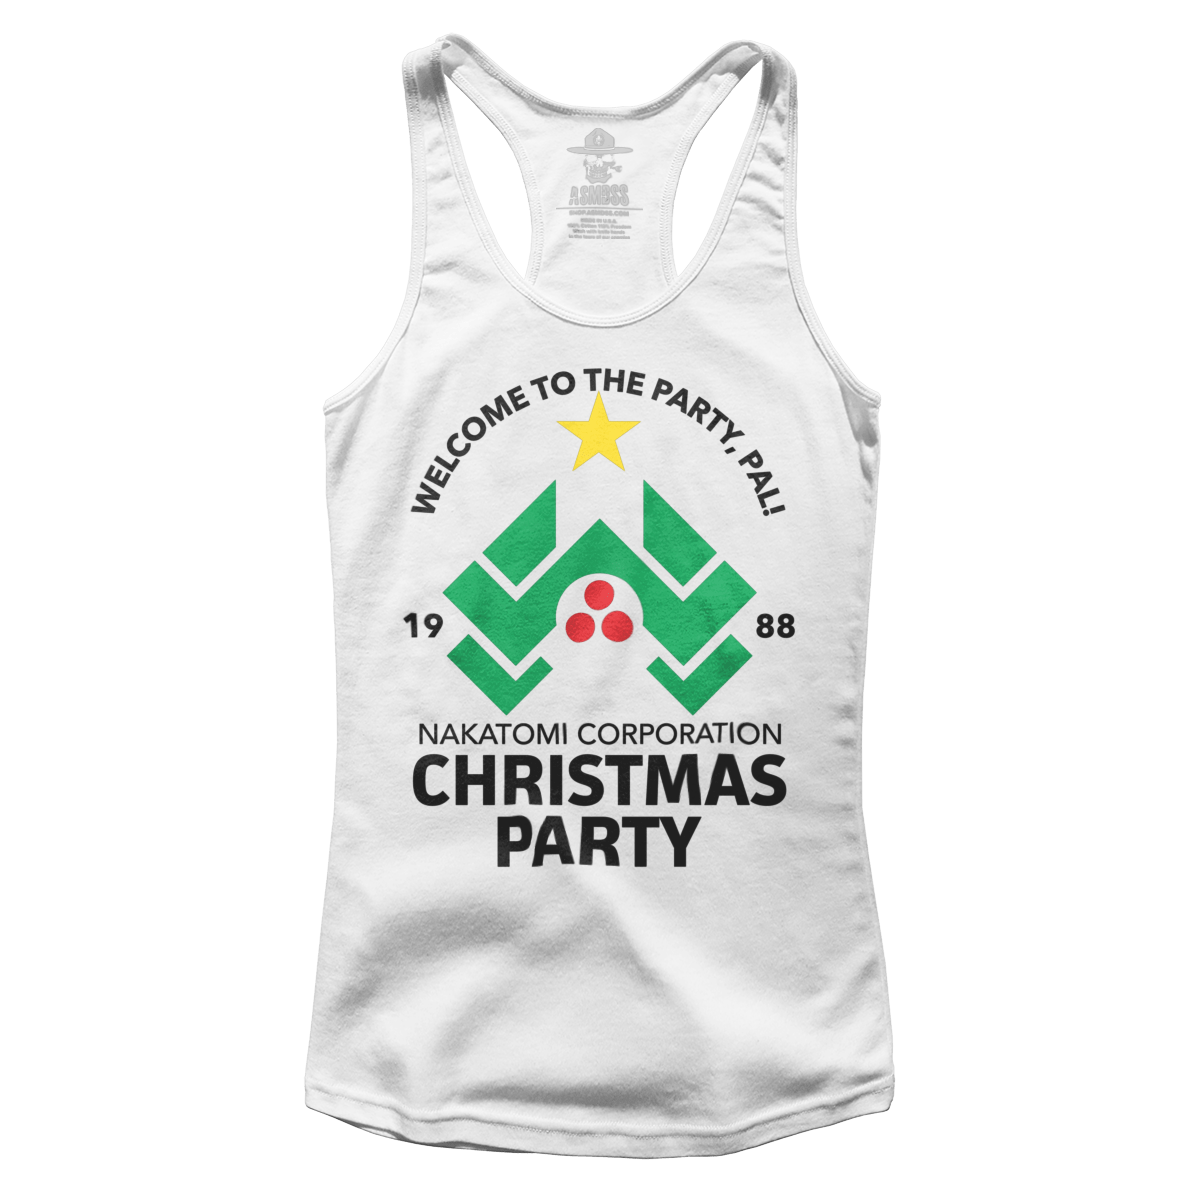 Die Hard Christmas Party (Ladies)